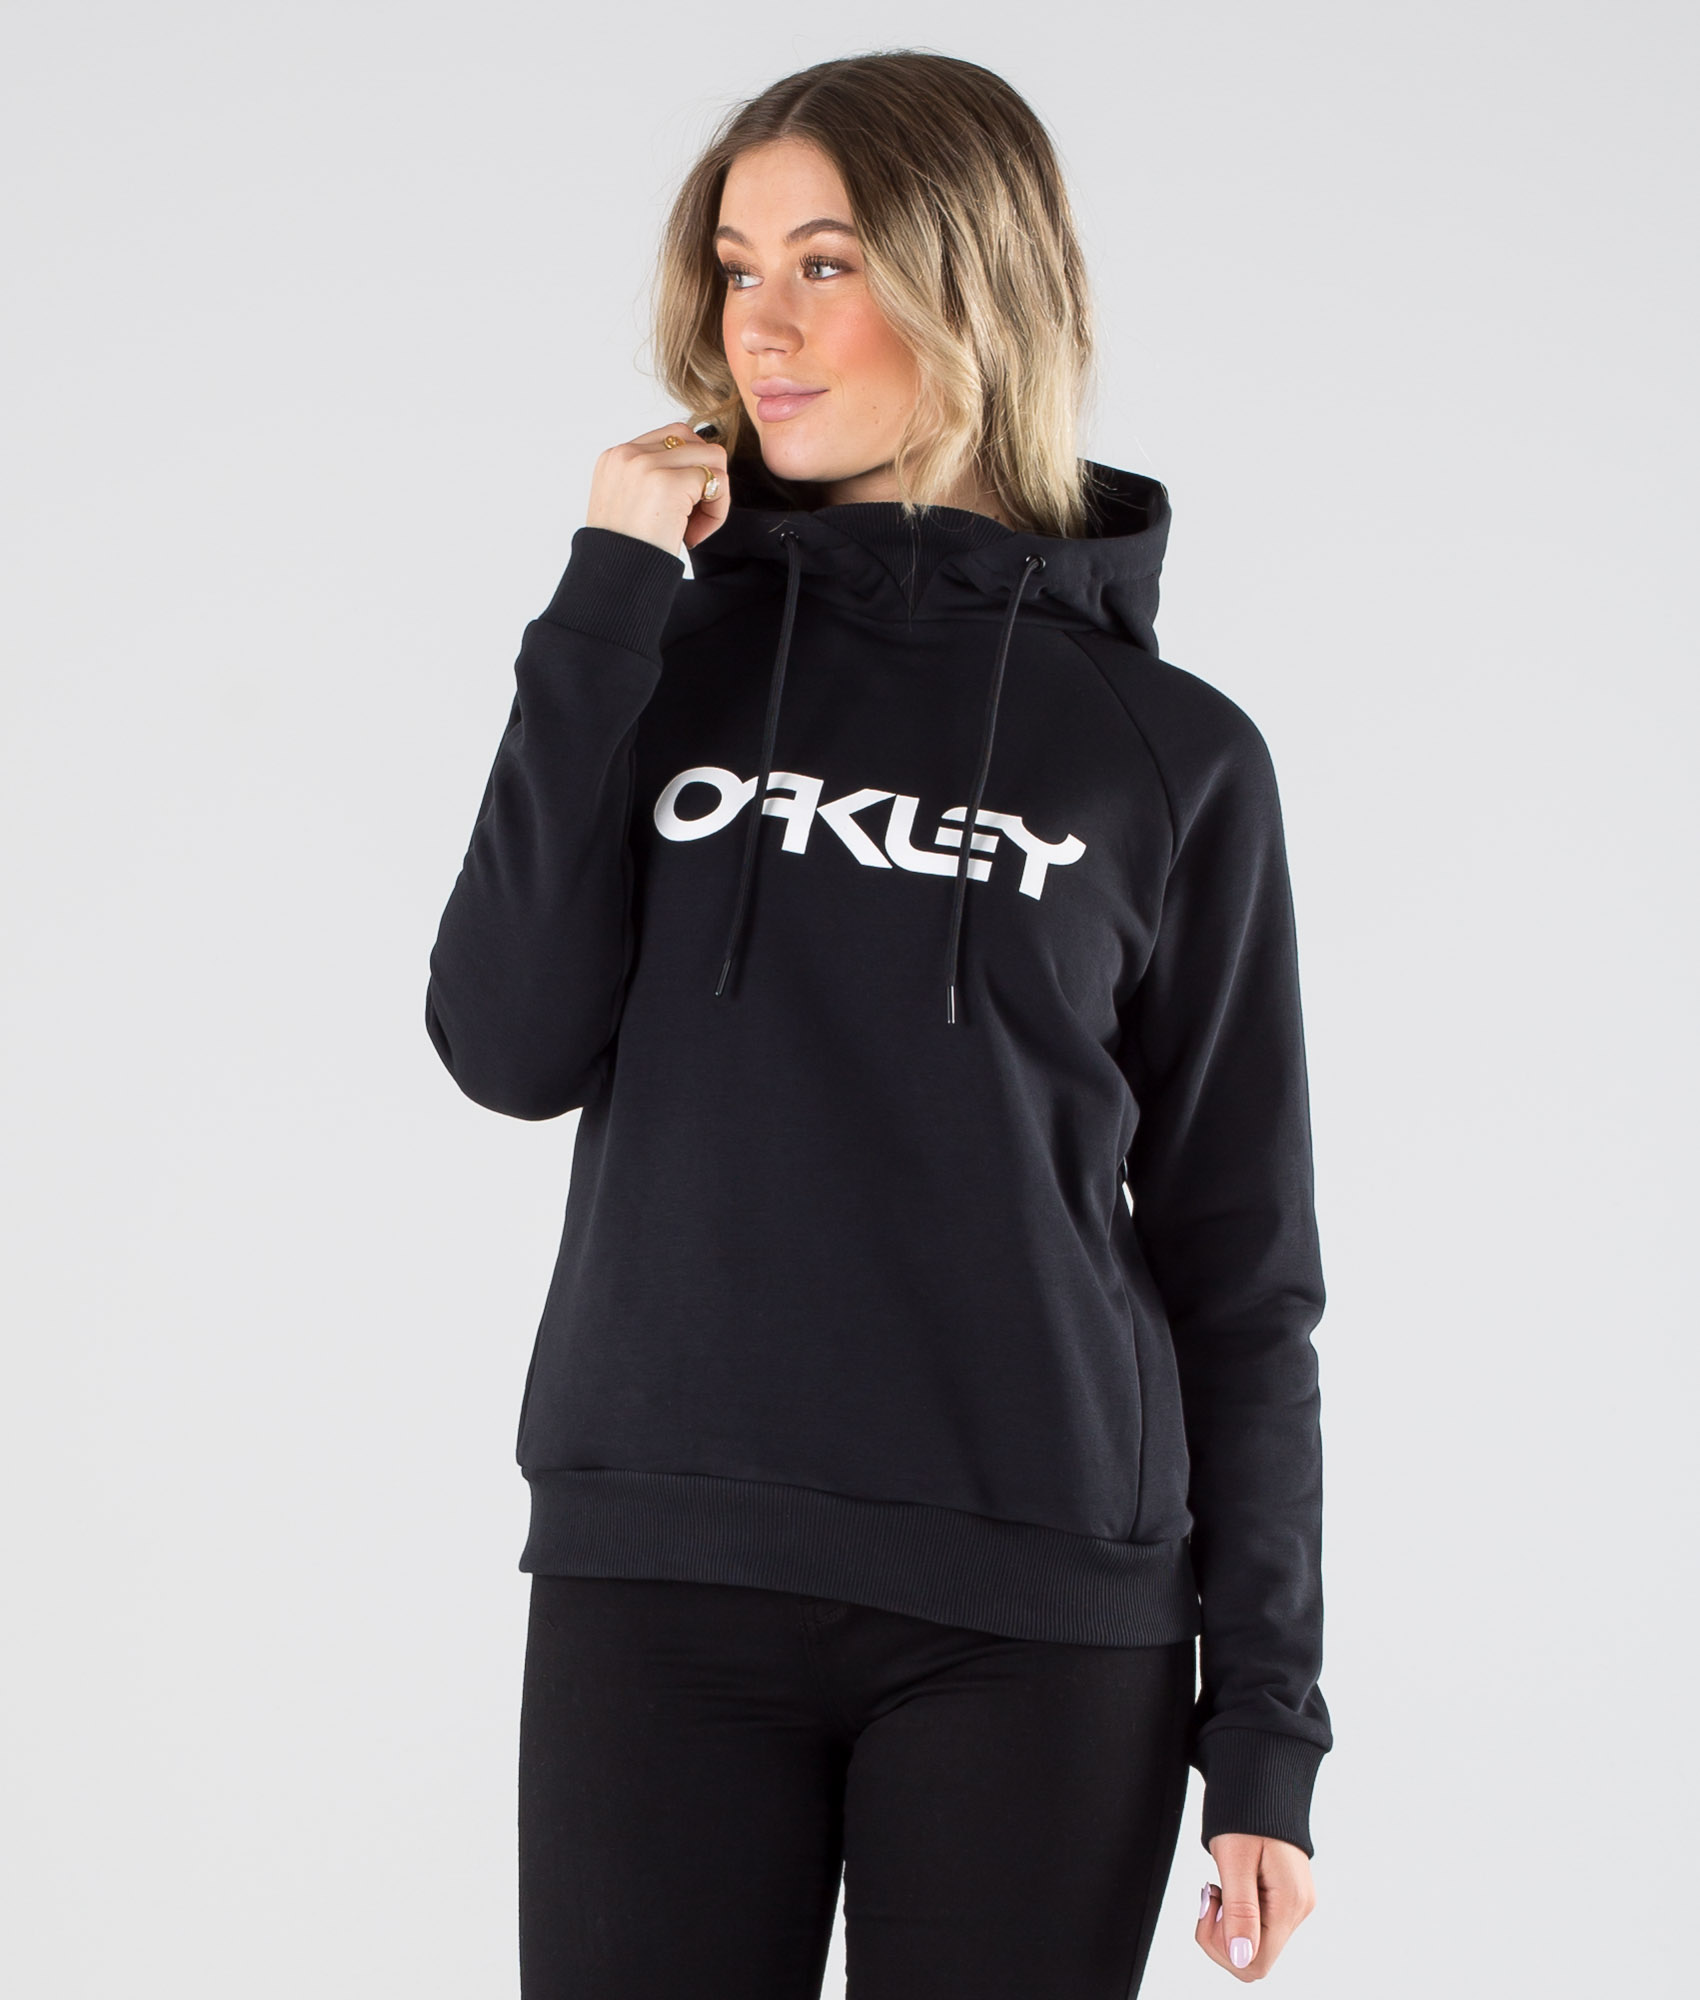 oakley hoodie women's